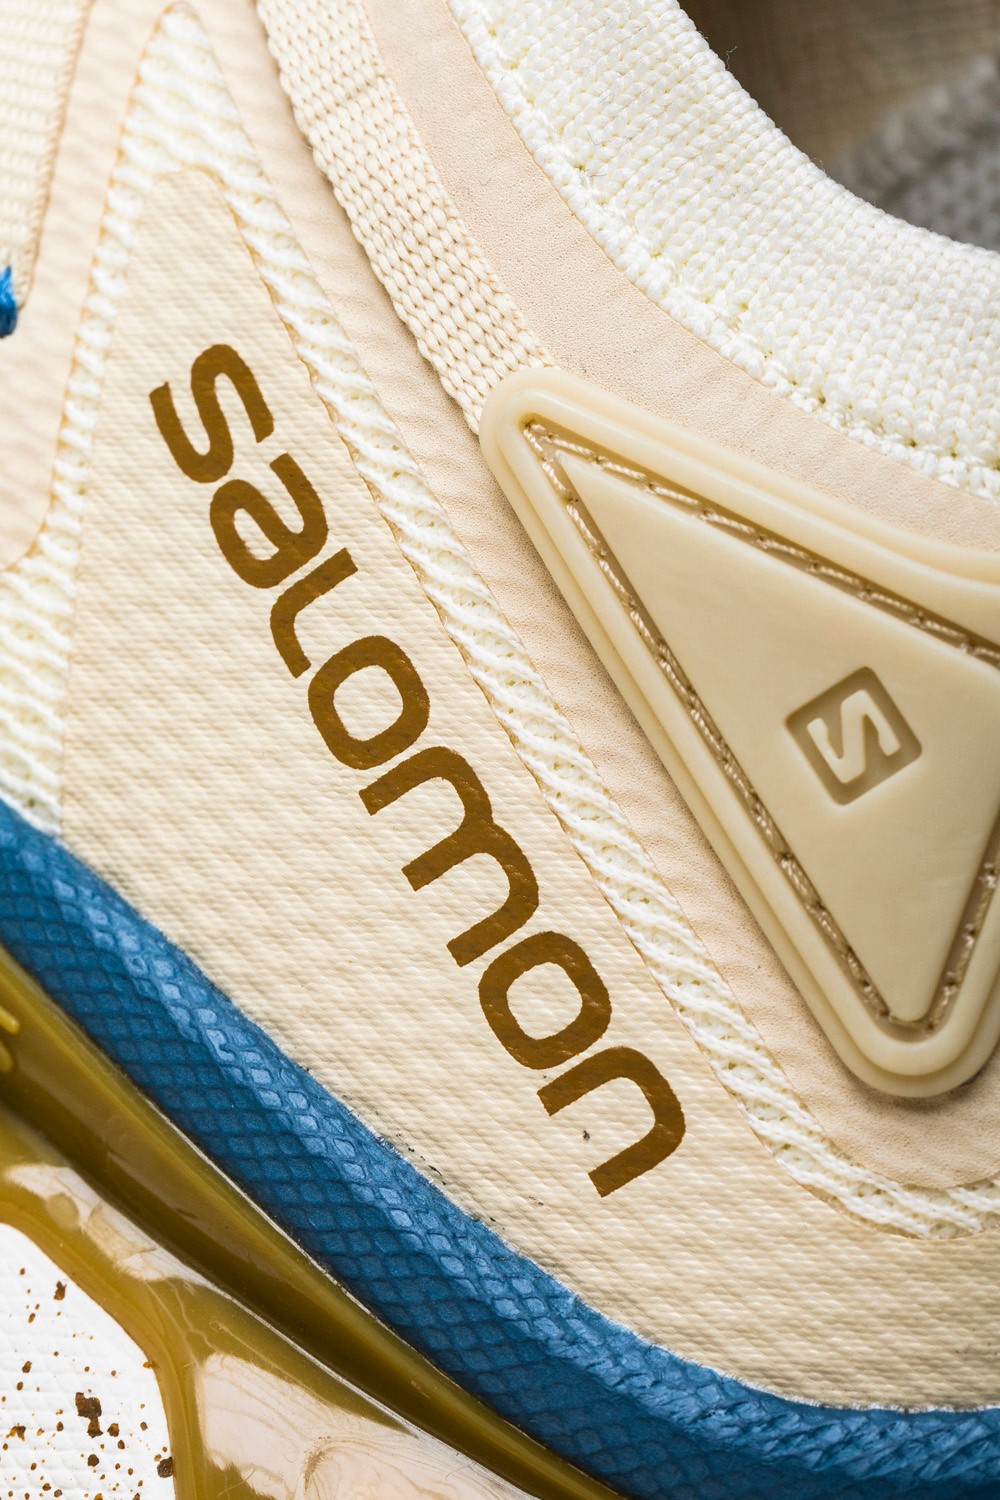 SALOMON,XT-RUSH  泫雅私藏的「宝藏鞋」又出新款！今年夏天的穿搭利器 +1！